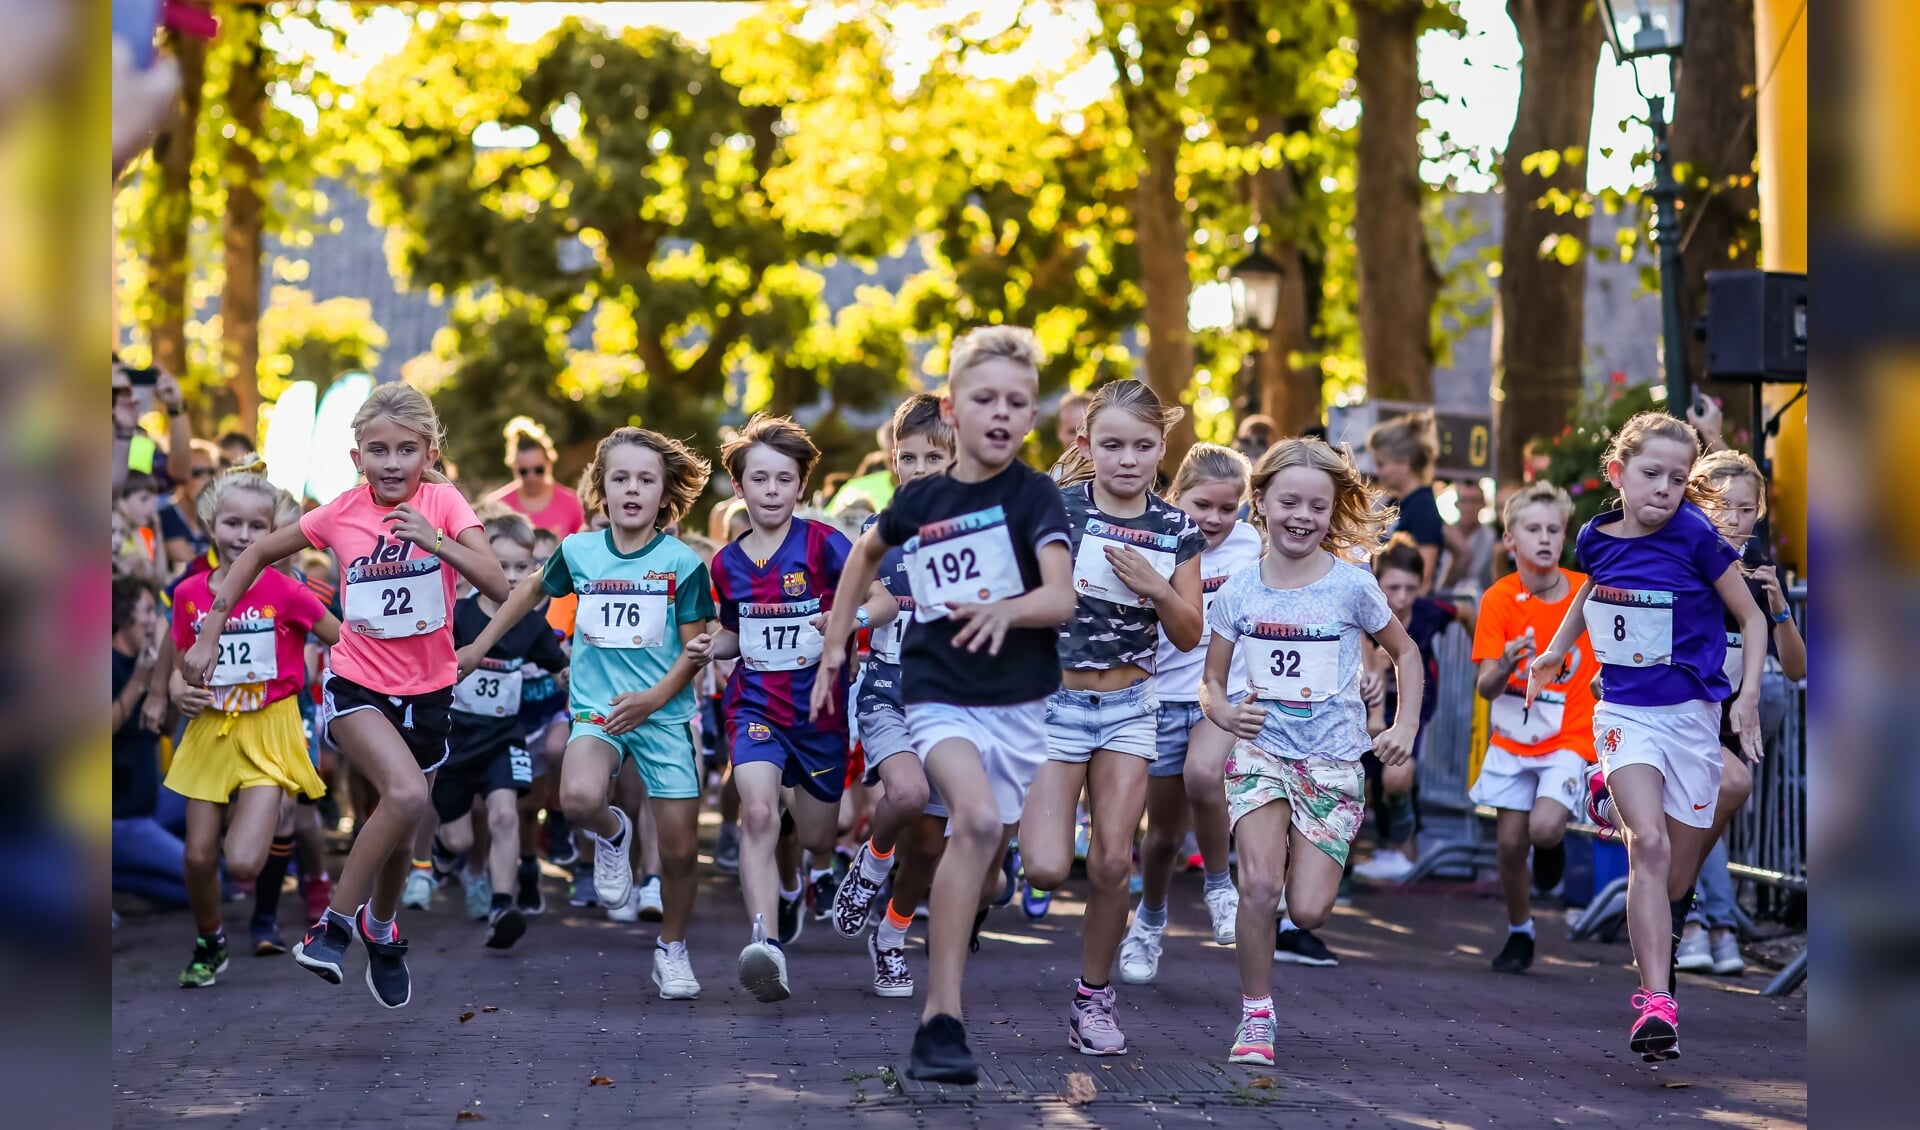 Direct na de start van de 1 kilometer Kidsrun wordt er al heel hard gelopen. Kinderen in de leeftijd t/m 8 jaar houden ervan om zo hard mogelijk te lopen.